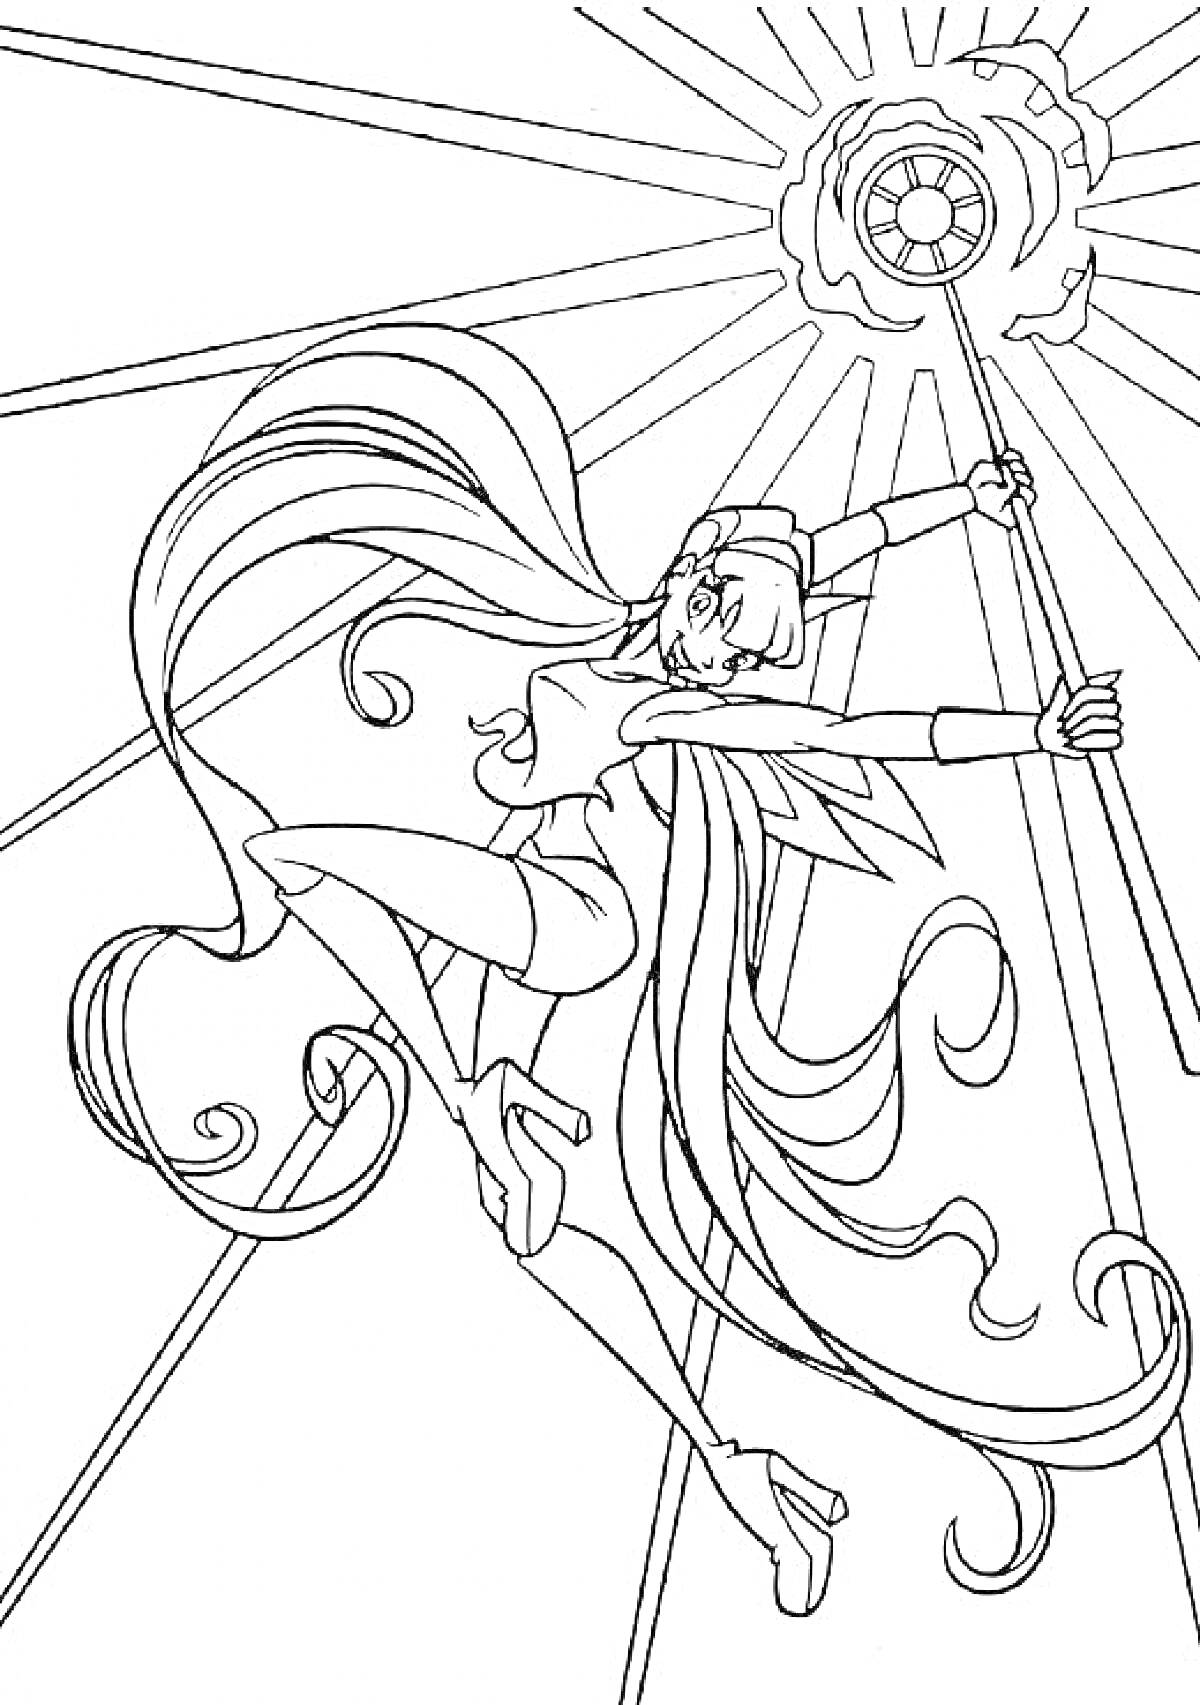 Раскраска Винкс Стелла с длинными распущенными волосами в динамичной позе с магическим жезлом, испускающим лучи